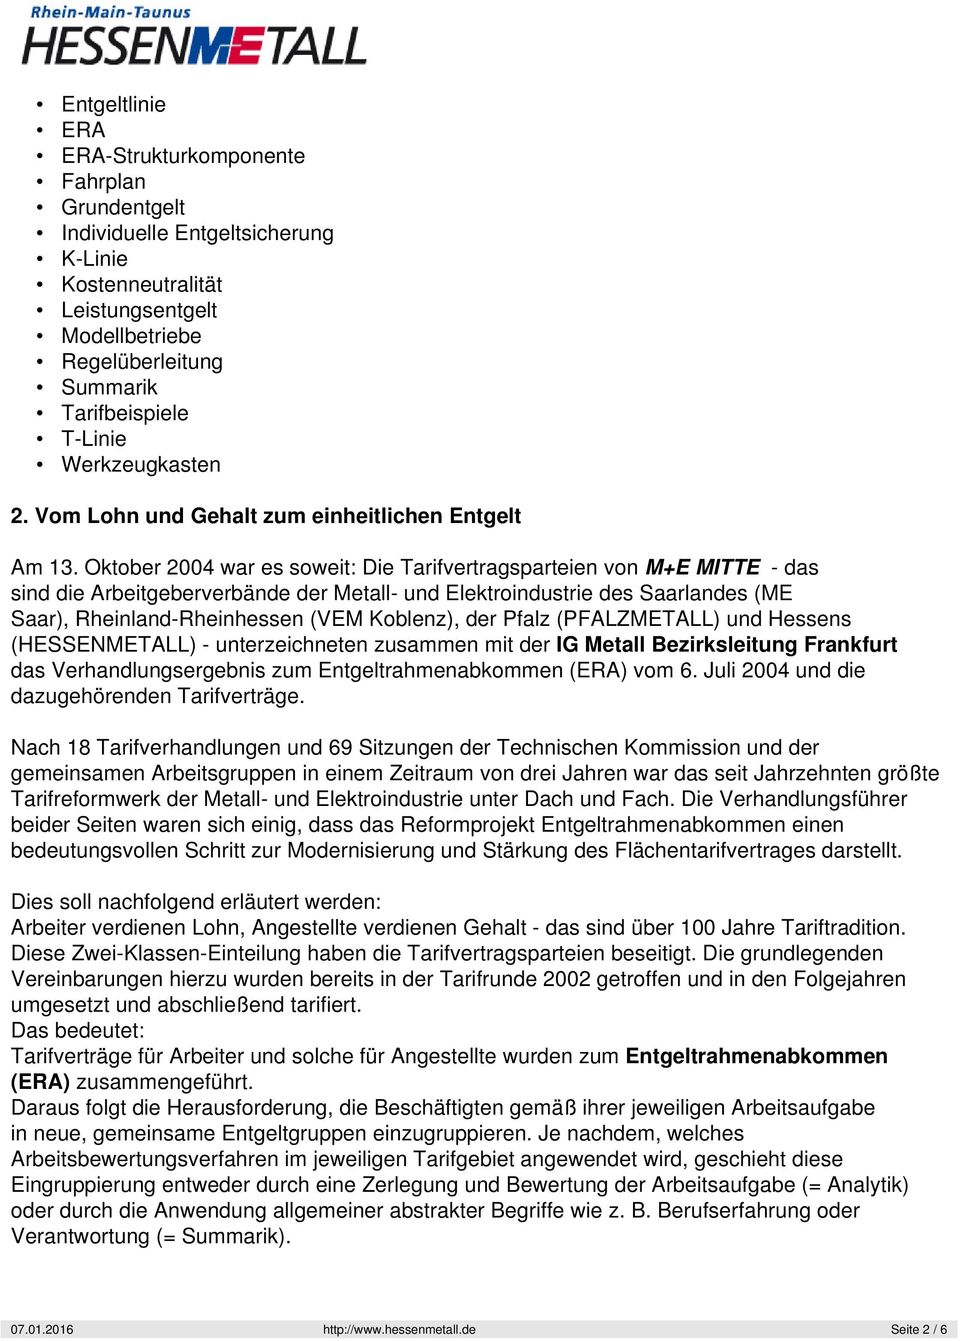 Oktober 2004 war es soweit: Die Tarifvertragsparteien von M+E MITTE - das sind die Arbeitgeberverbände der Metall- und Elektroindustrie des Saarlandes (ME Saar), Rheinland-Rheinhessen (VEM Koblenz),